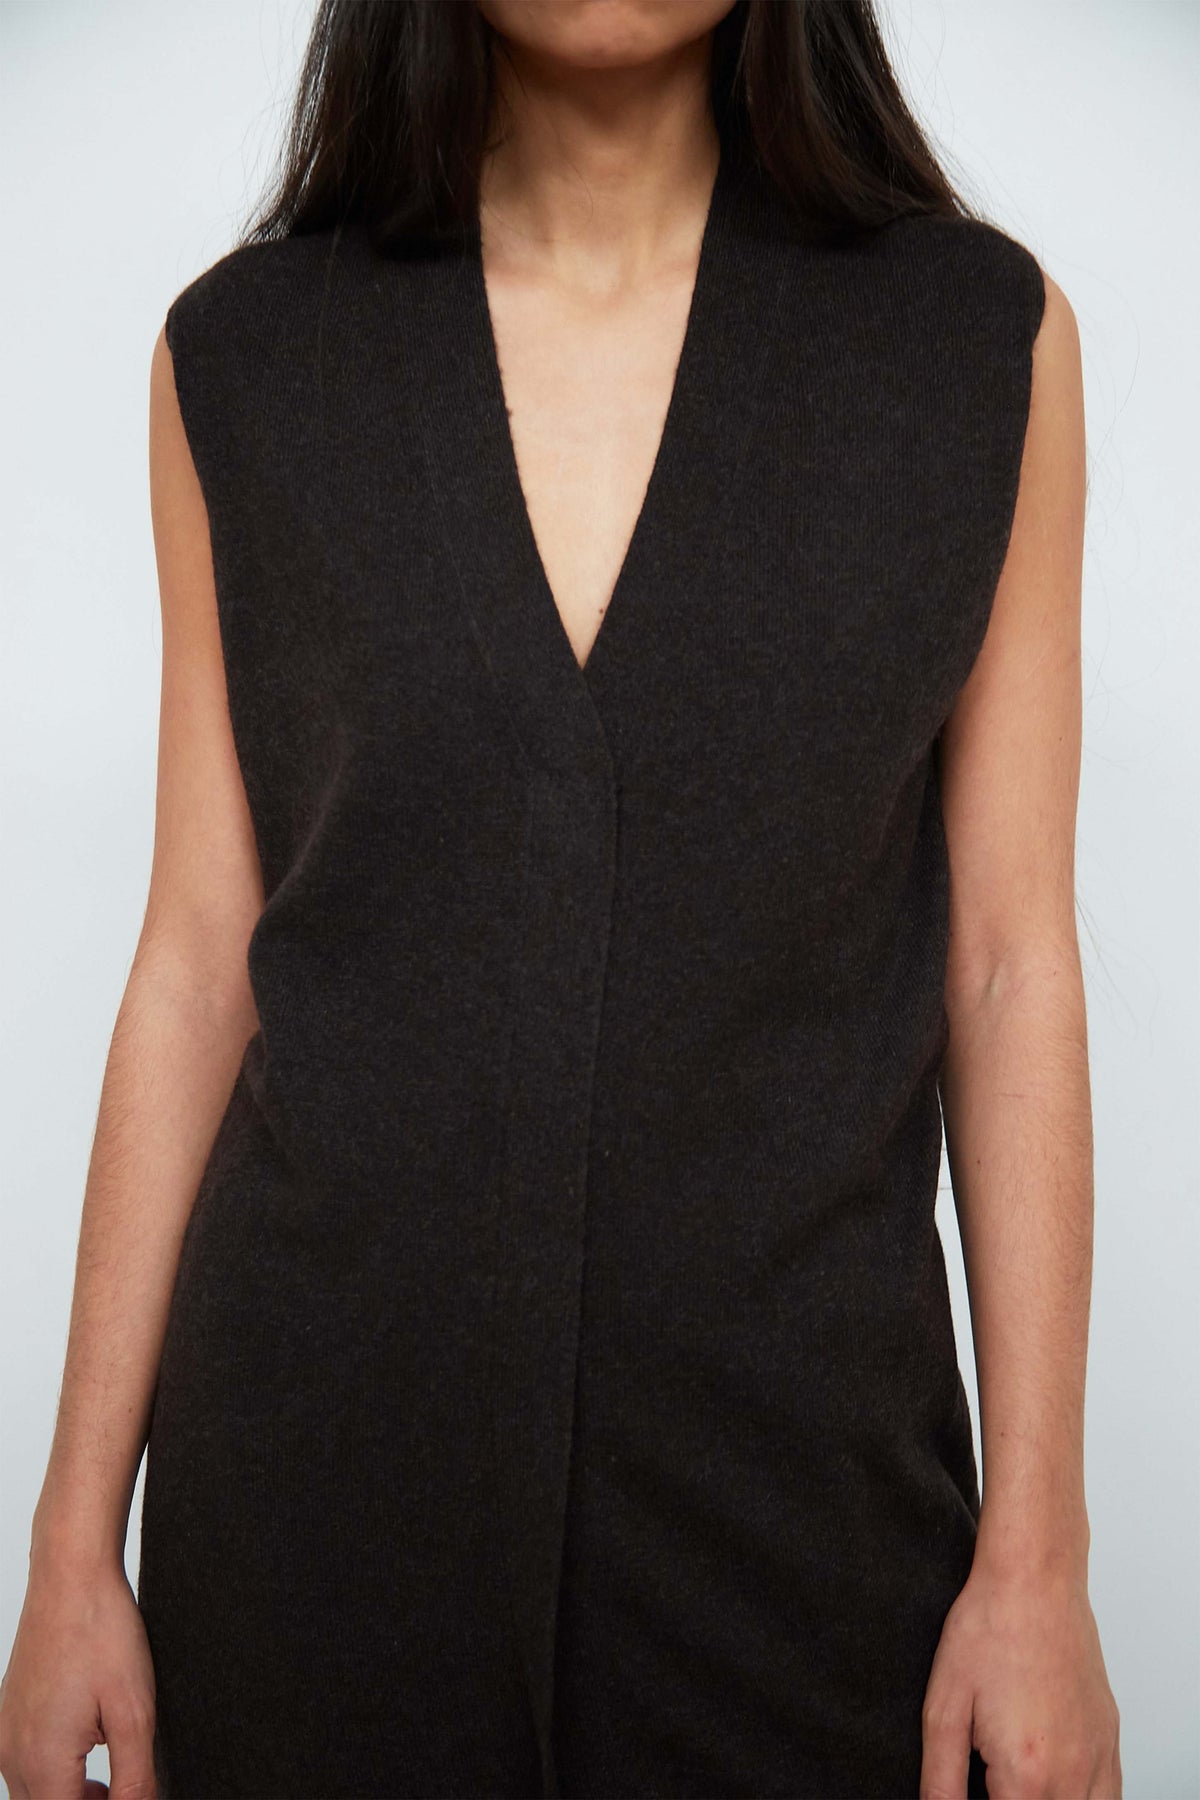 Hermes cashmere vest/dress